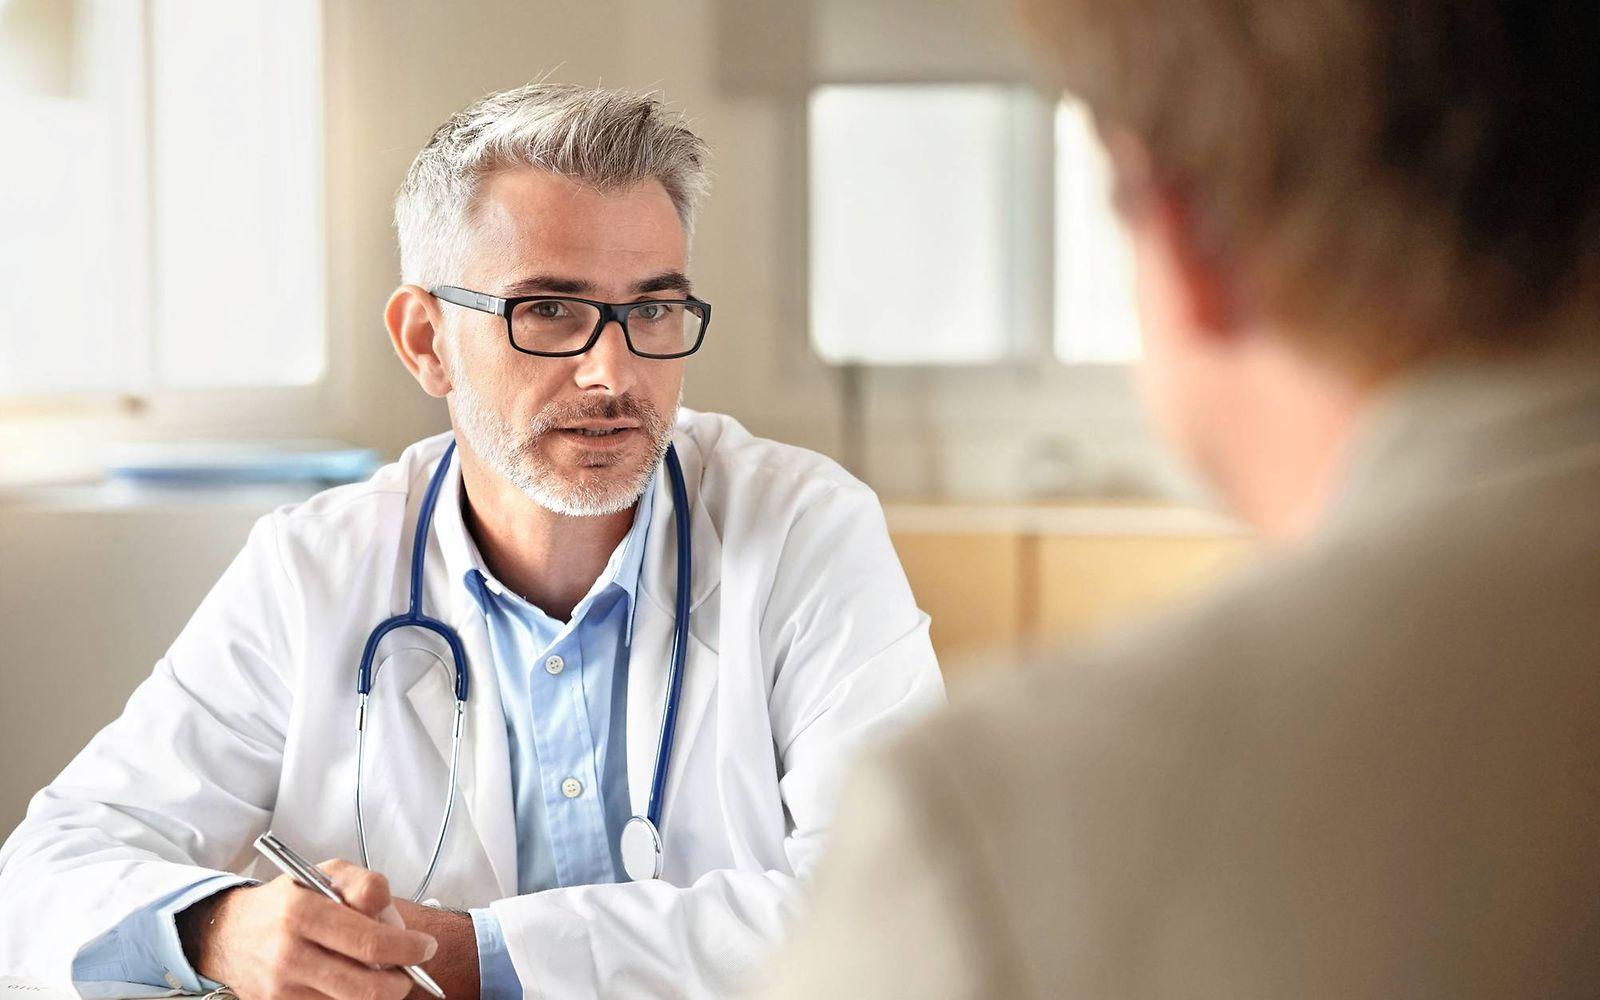 Bild: Arzt im Gespräch mit einem Patienten zu einem DMP Programm.